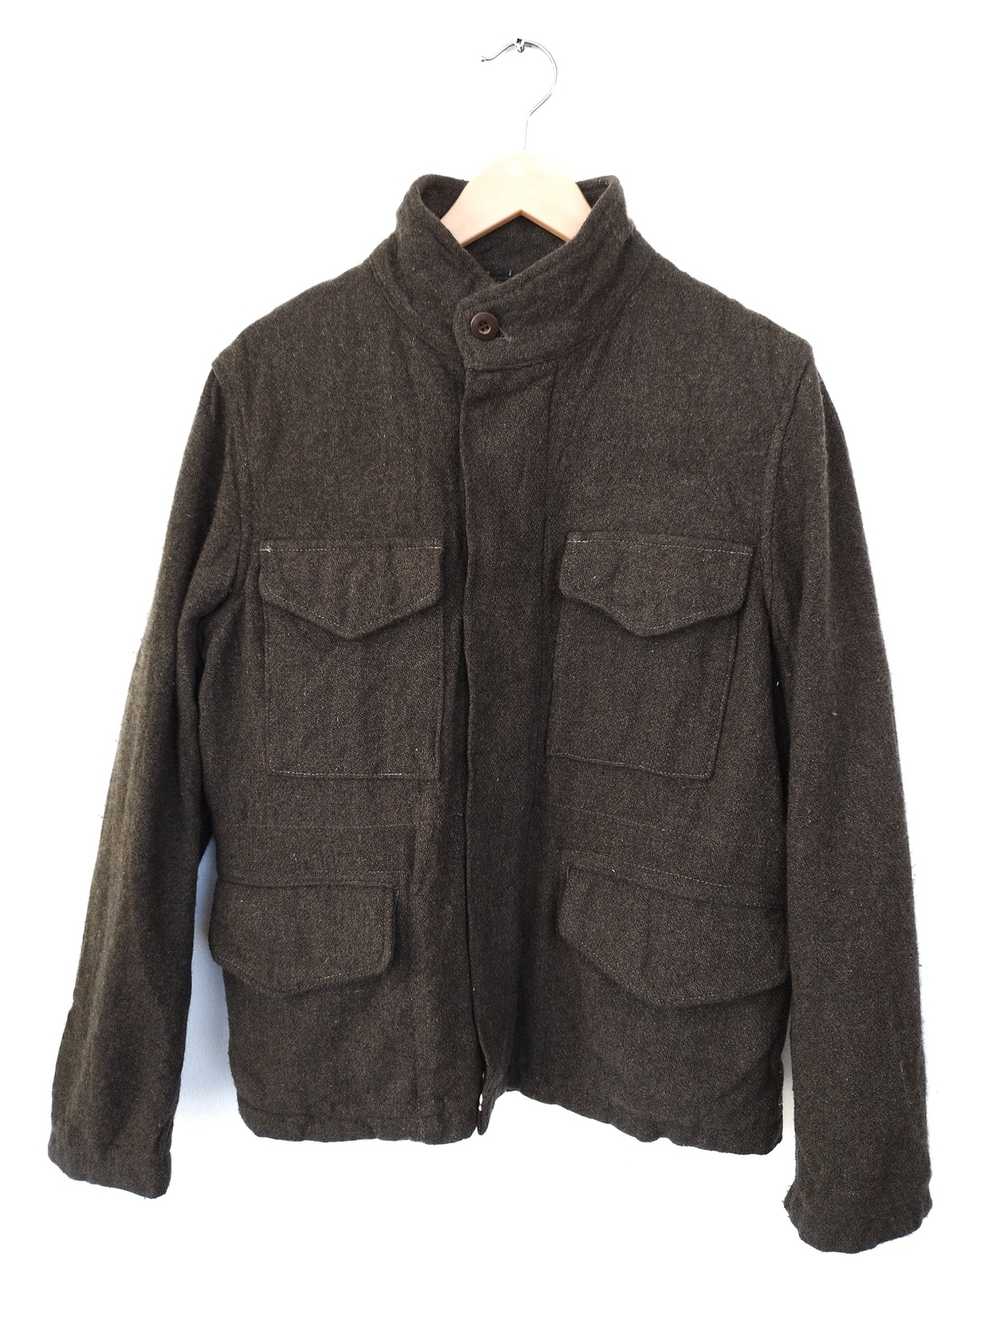 Japanese Brand × Omnigod Omnigod jacket - image 1